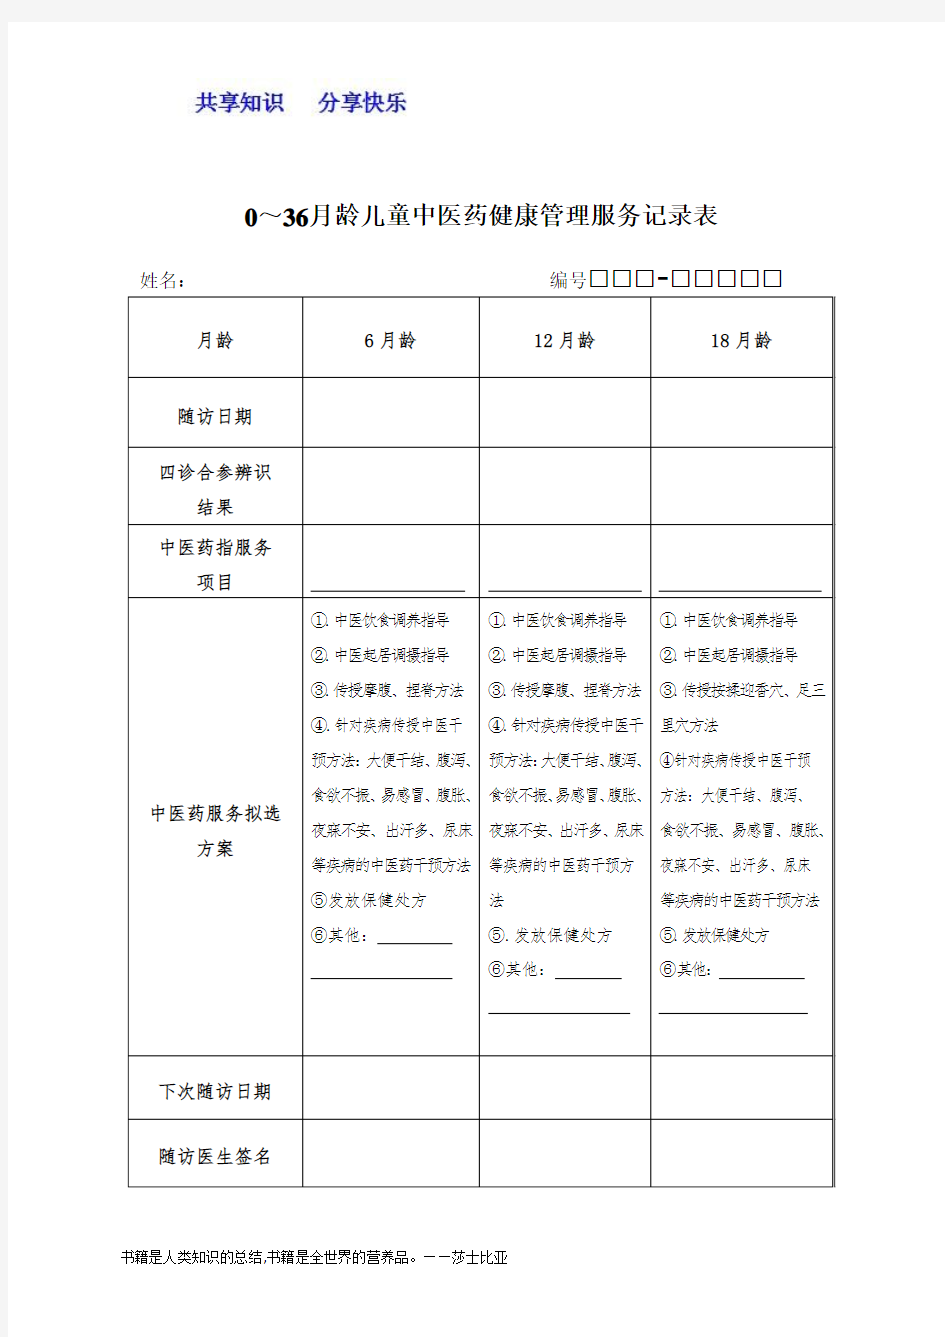 中医药健康管理服务记录表